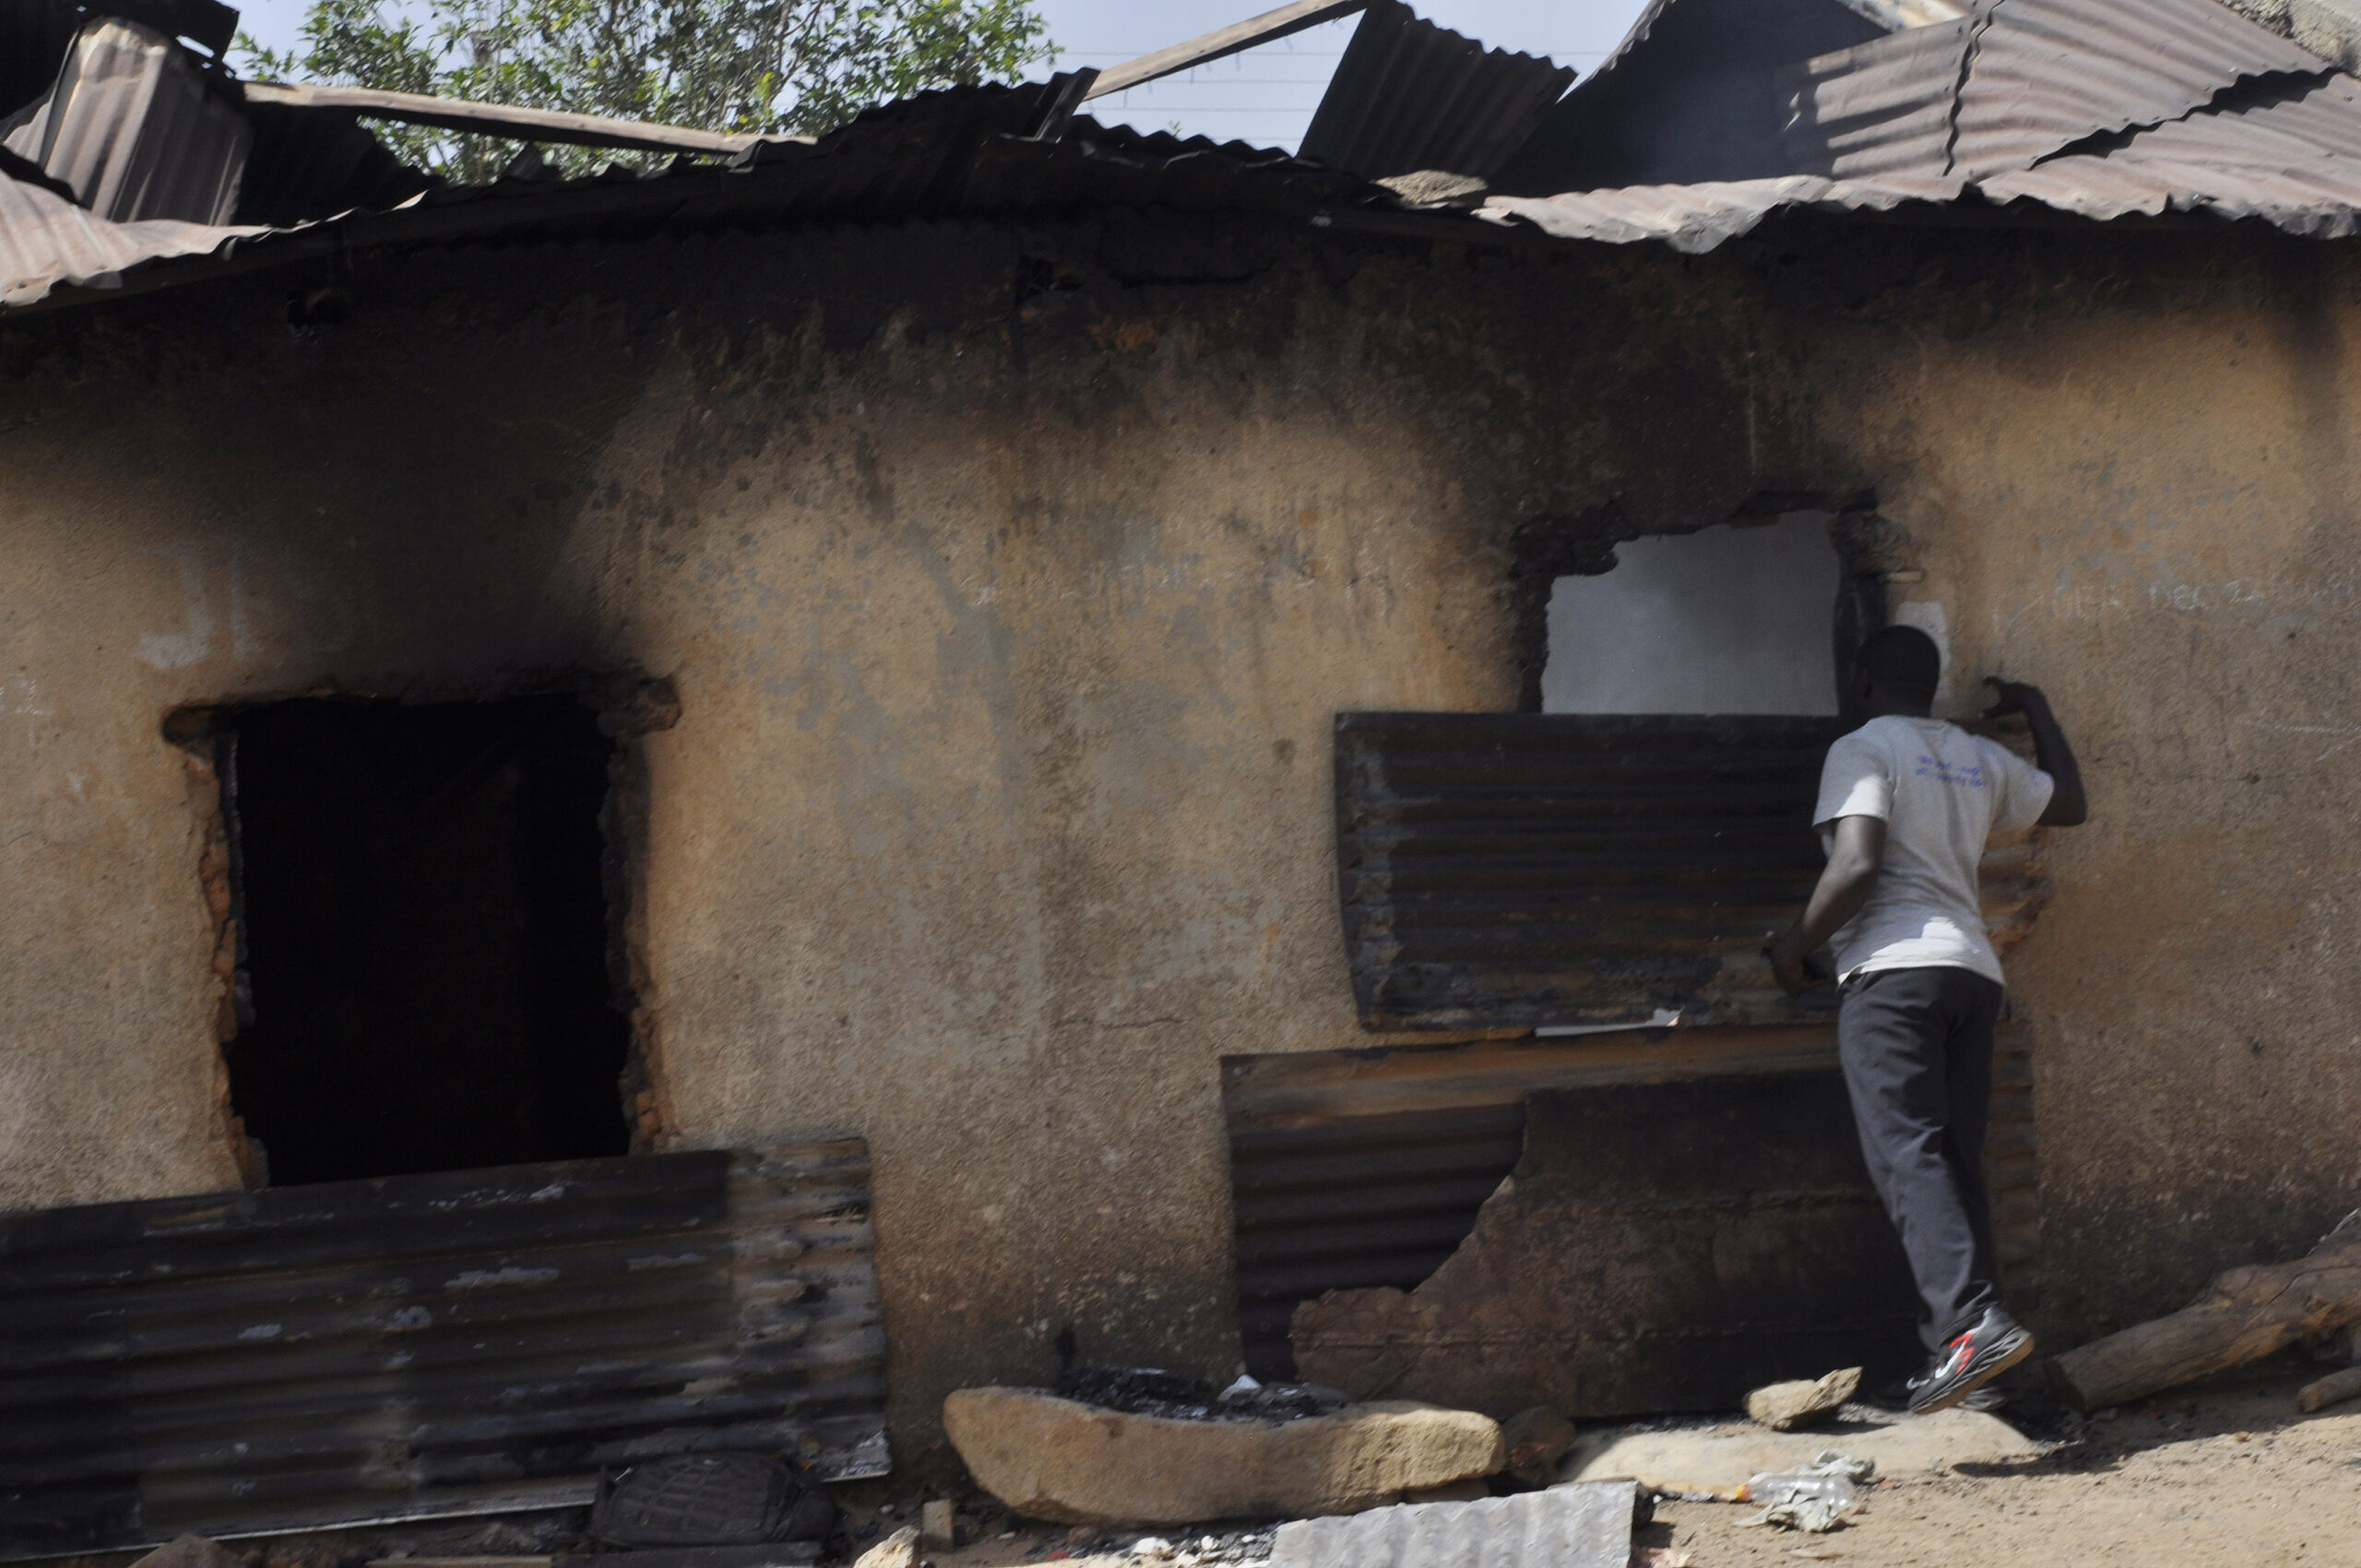 Ein Mann inspiziert nach einem Angriff ein ausgebranntes Haus.